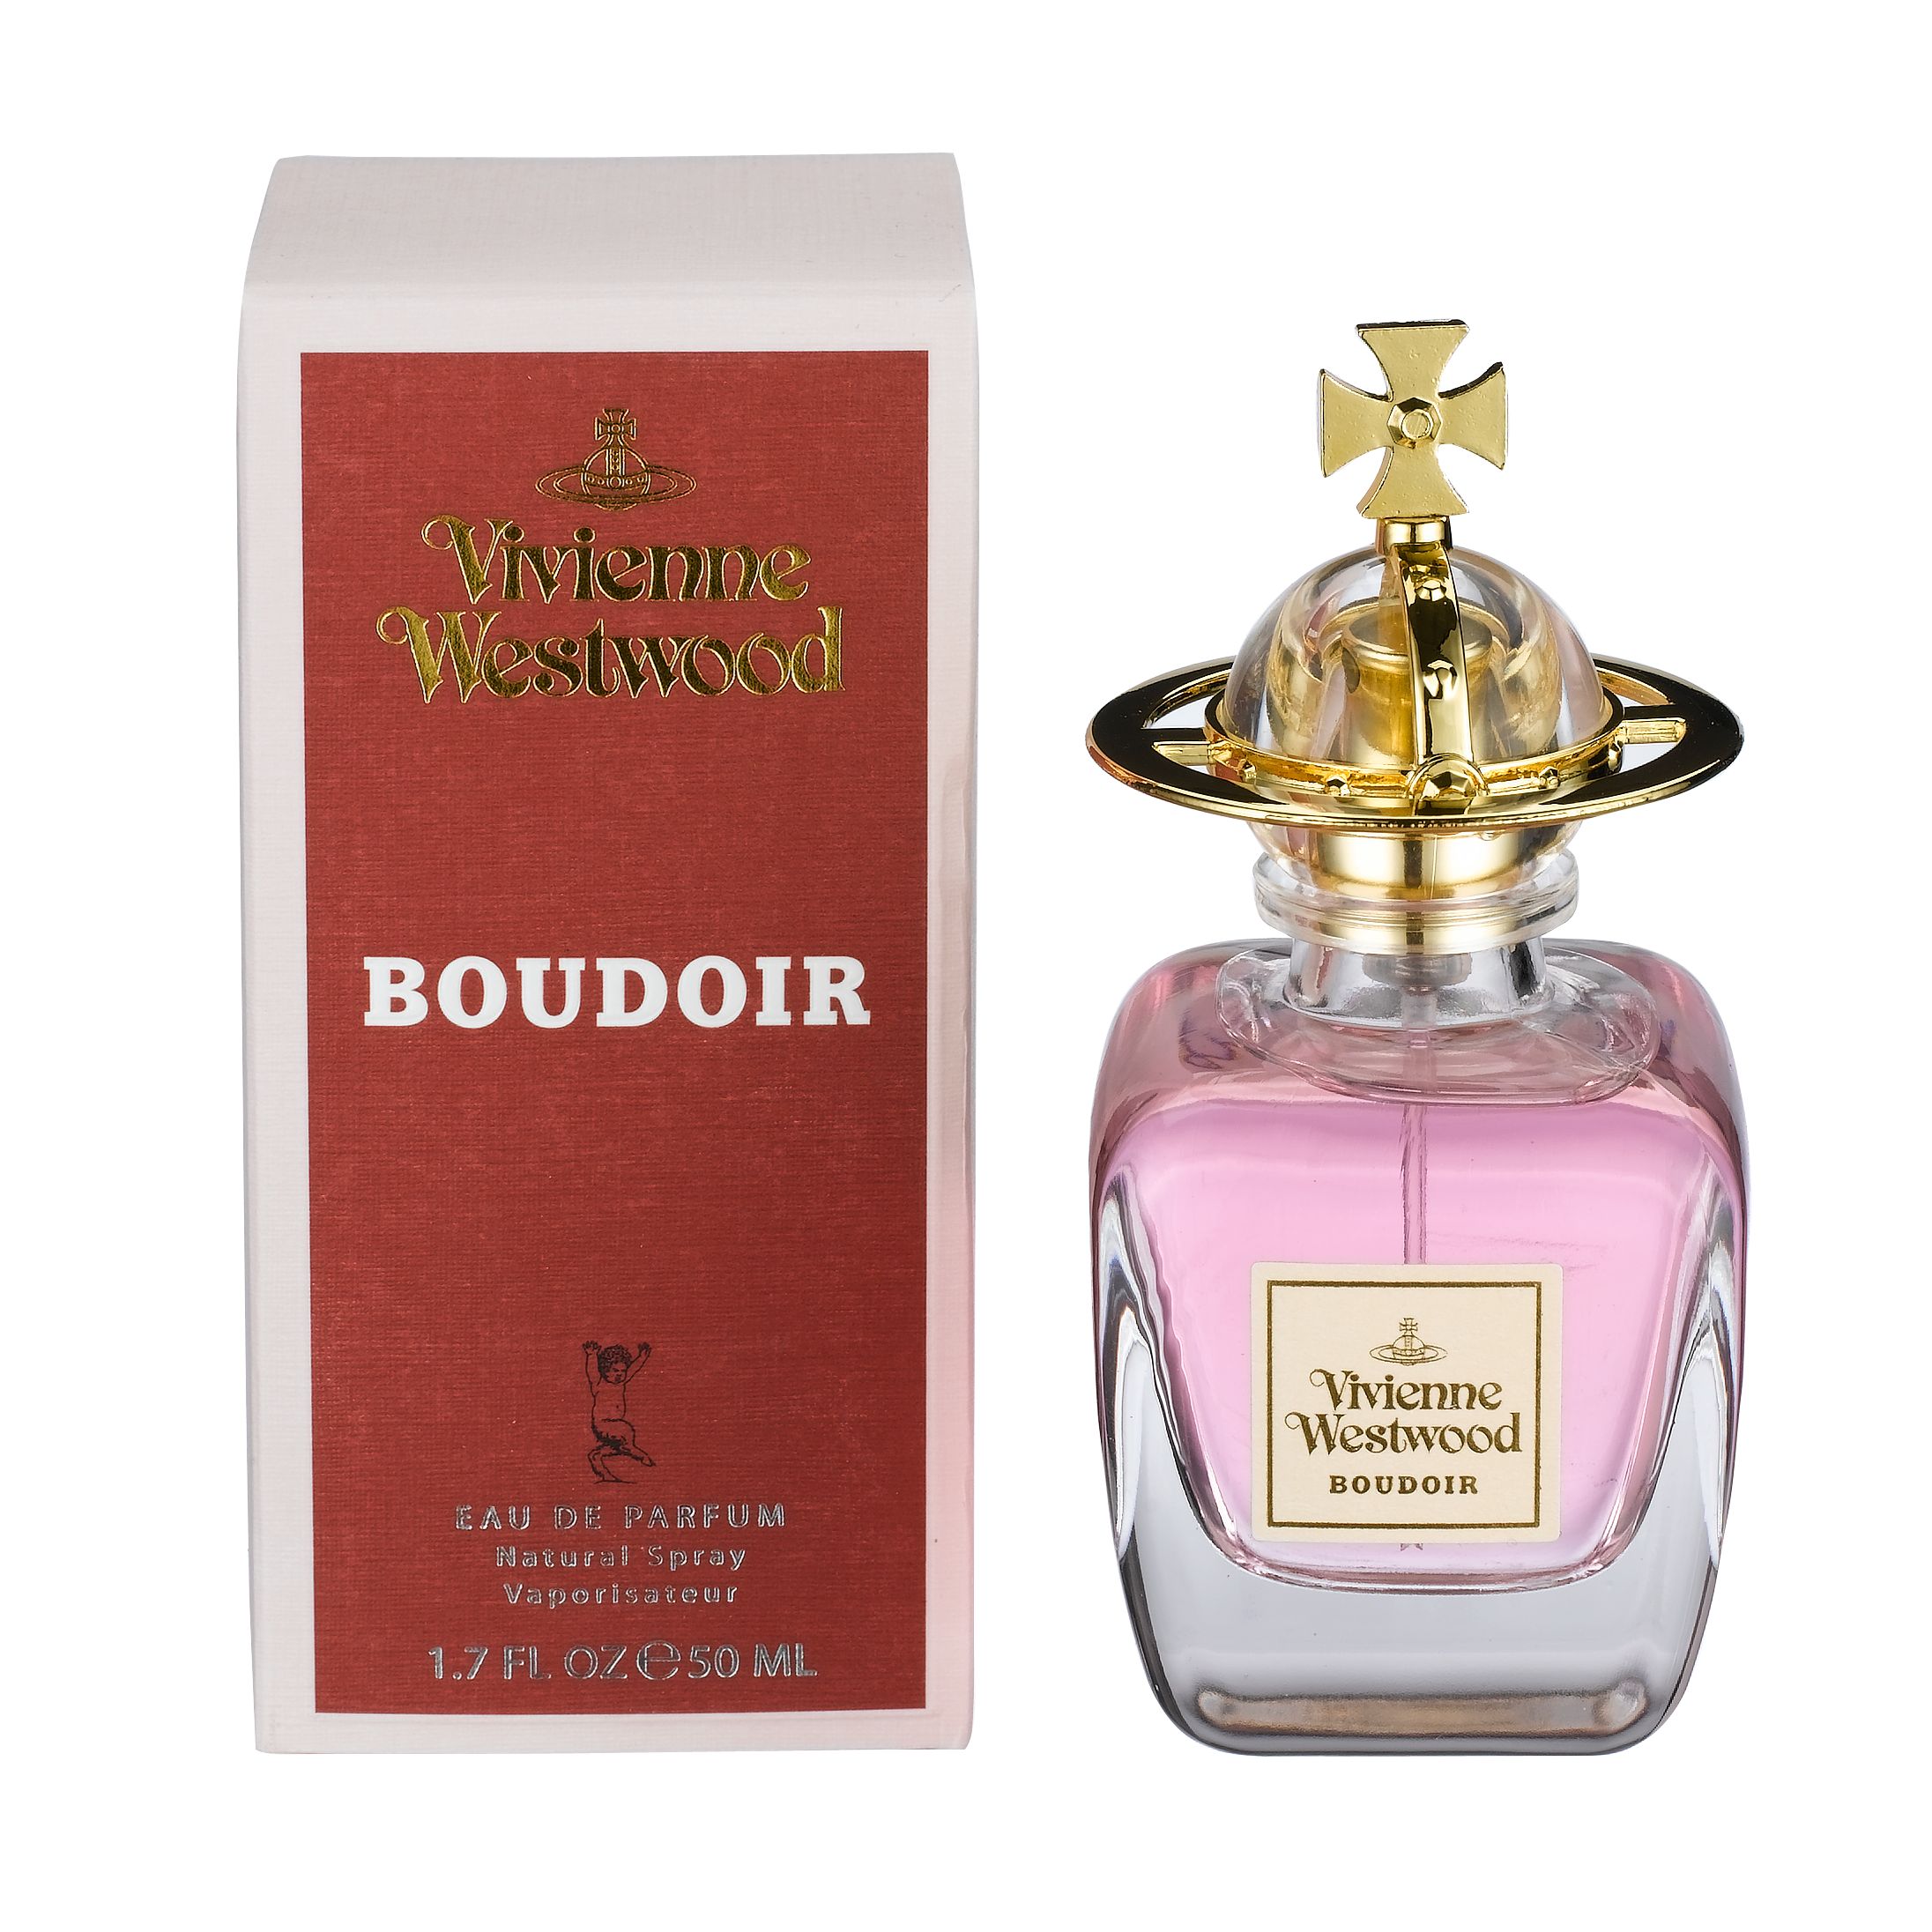 Vivienne Westwood Boudoir Eau de Parfum at John Lewis & Partners